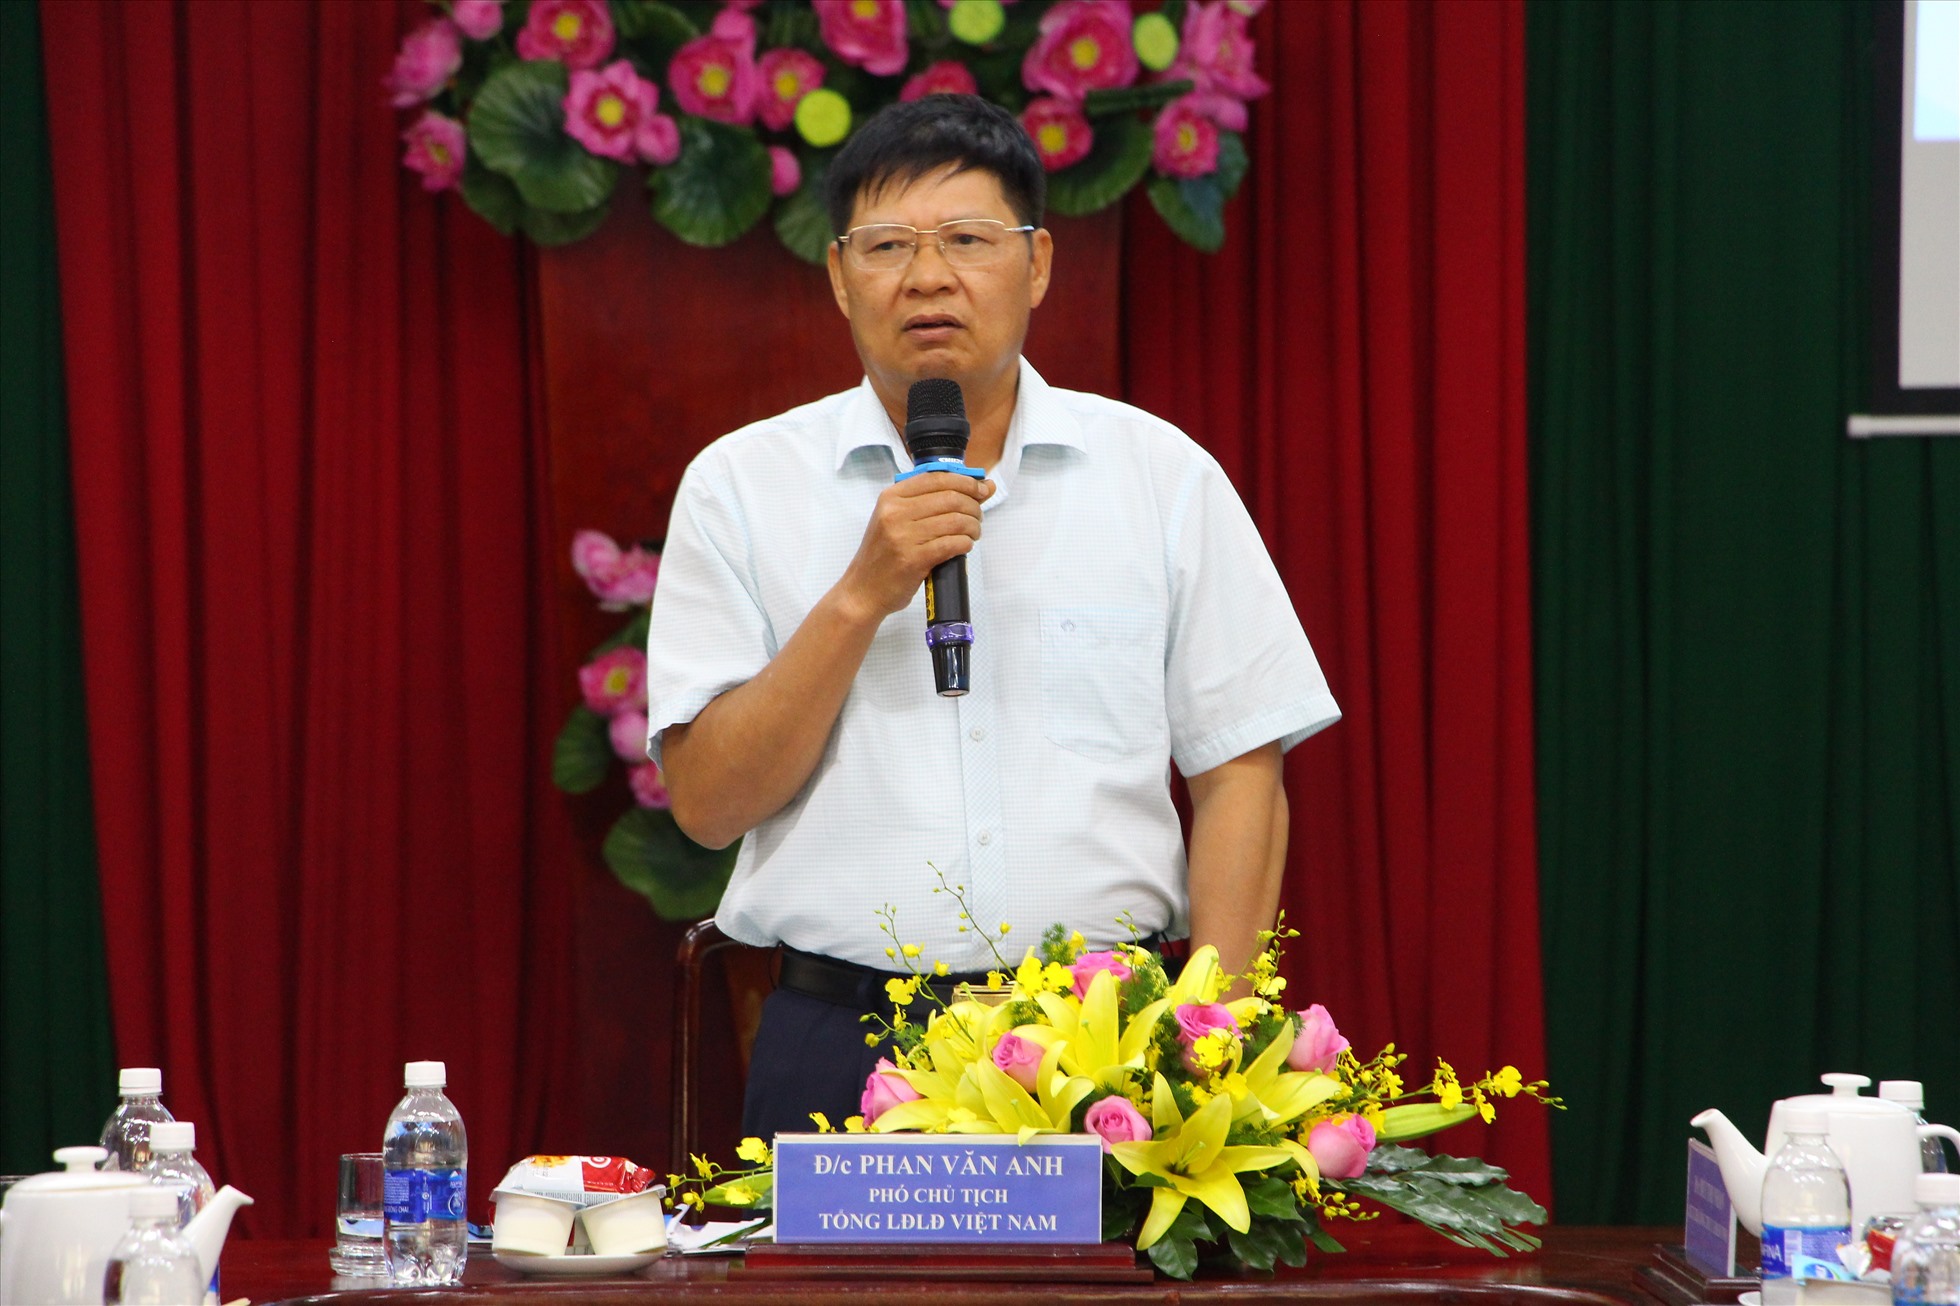 Phó Chủ tịch Tổng LĐLĐVN Phan Văn Anh phát biểu tại buổi làm việc với Ban thường vụ LĐLĐ tỉnh Đồng Nai. Ảnh: Hà Anh Chiến